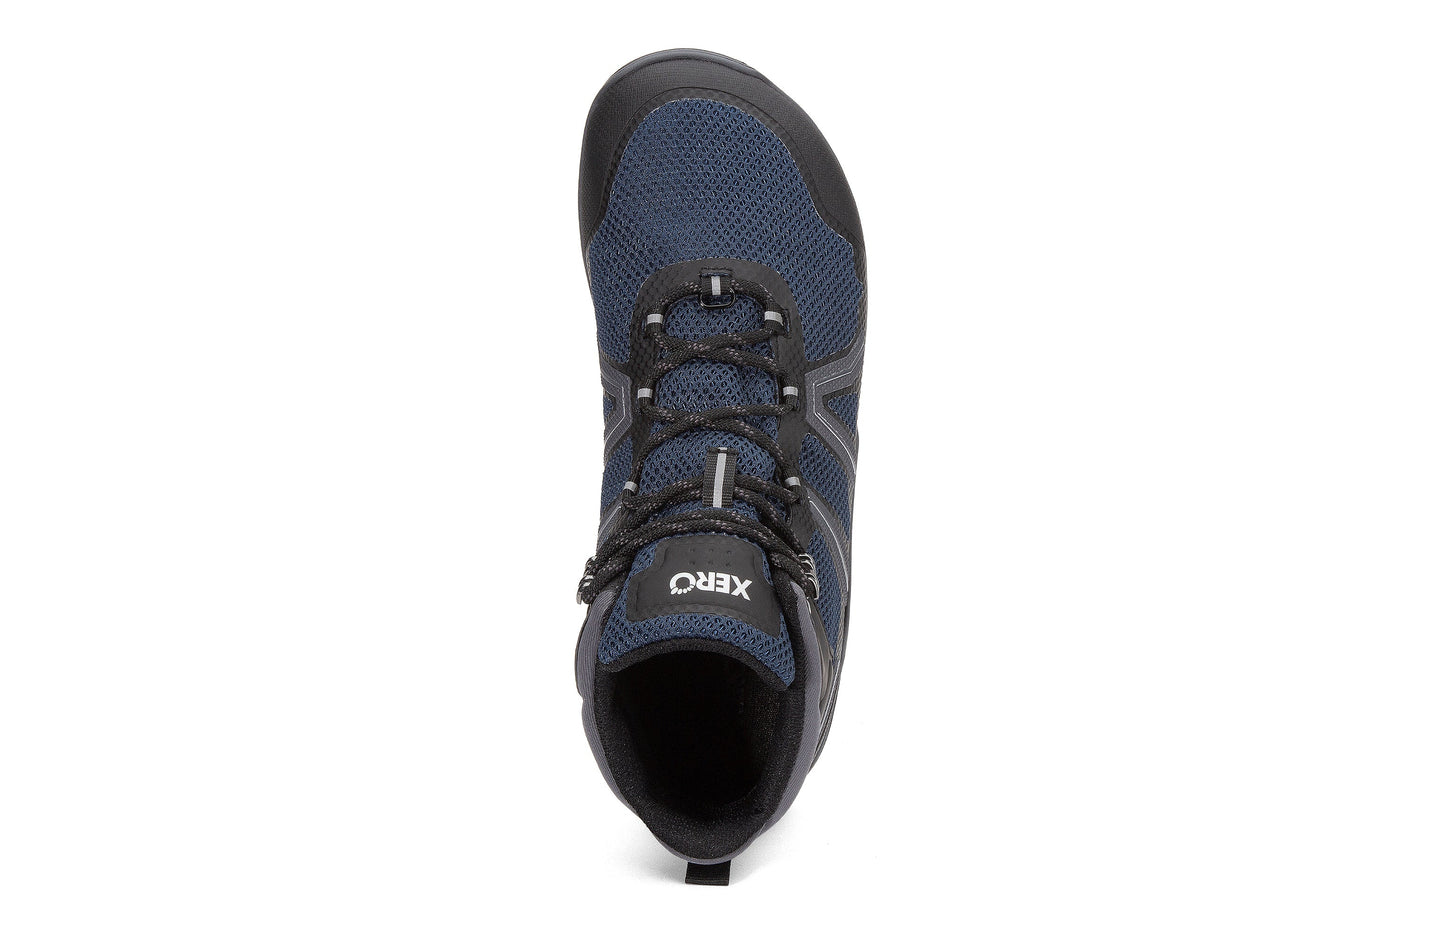 Xero Shoes Xcursion Fusion barfods støvler til mænd i farven moonlit blue / black, top